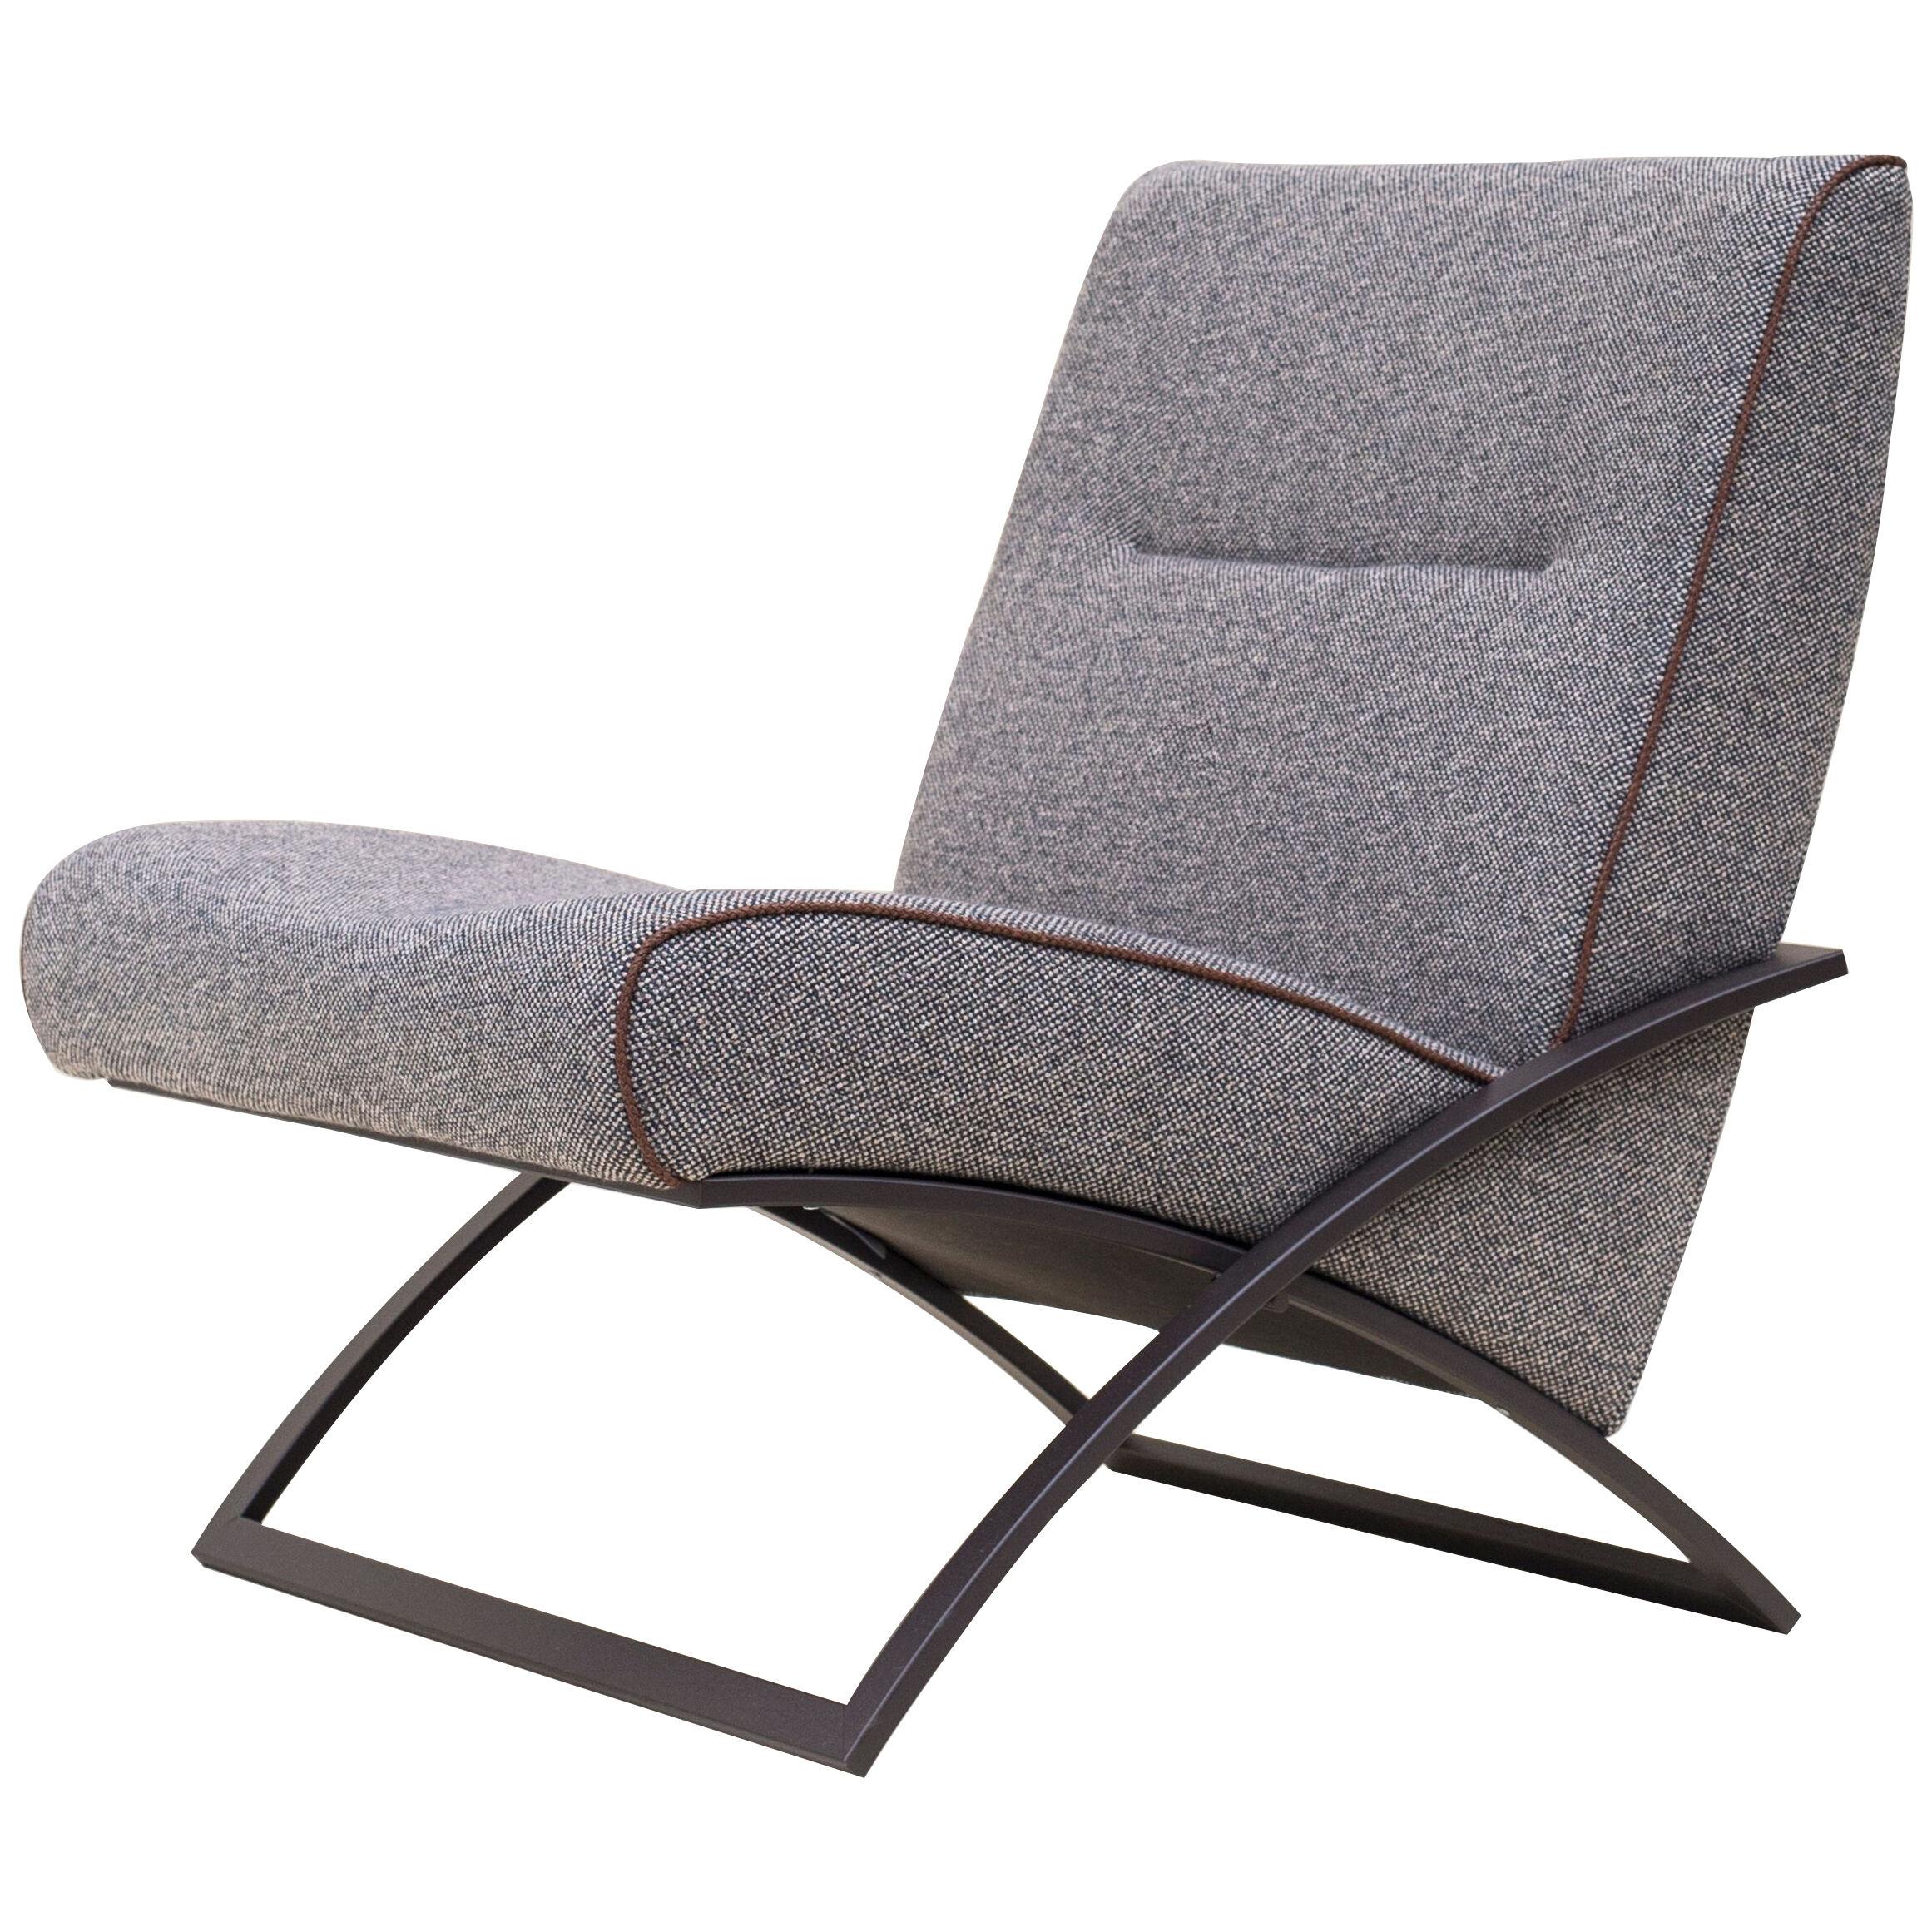 Bauhaus Modern Lounge Chair Dark Brown Metal Frame Brown Wool Upholster 